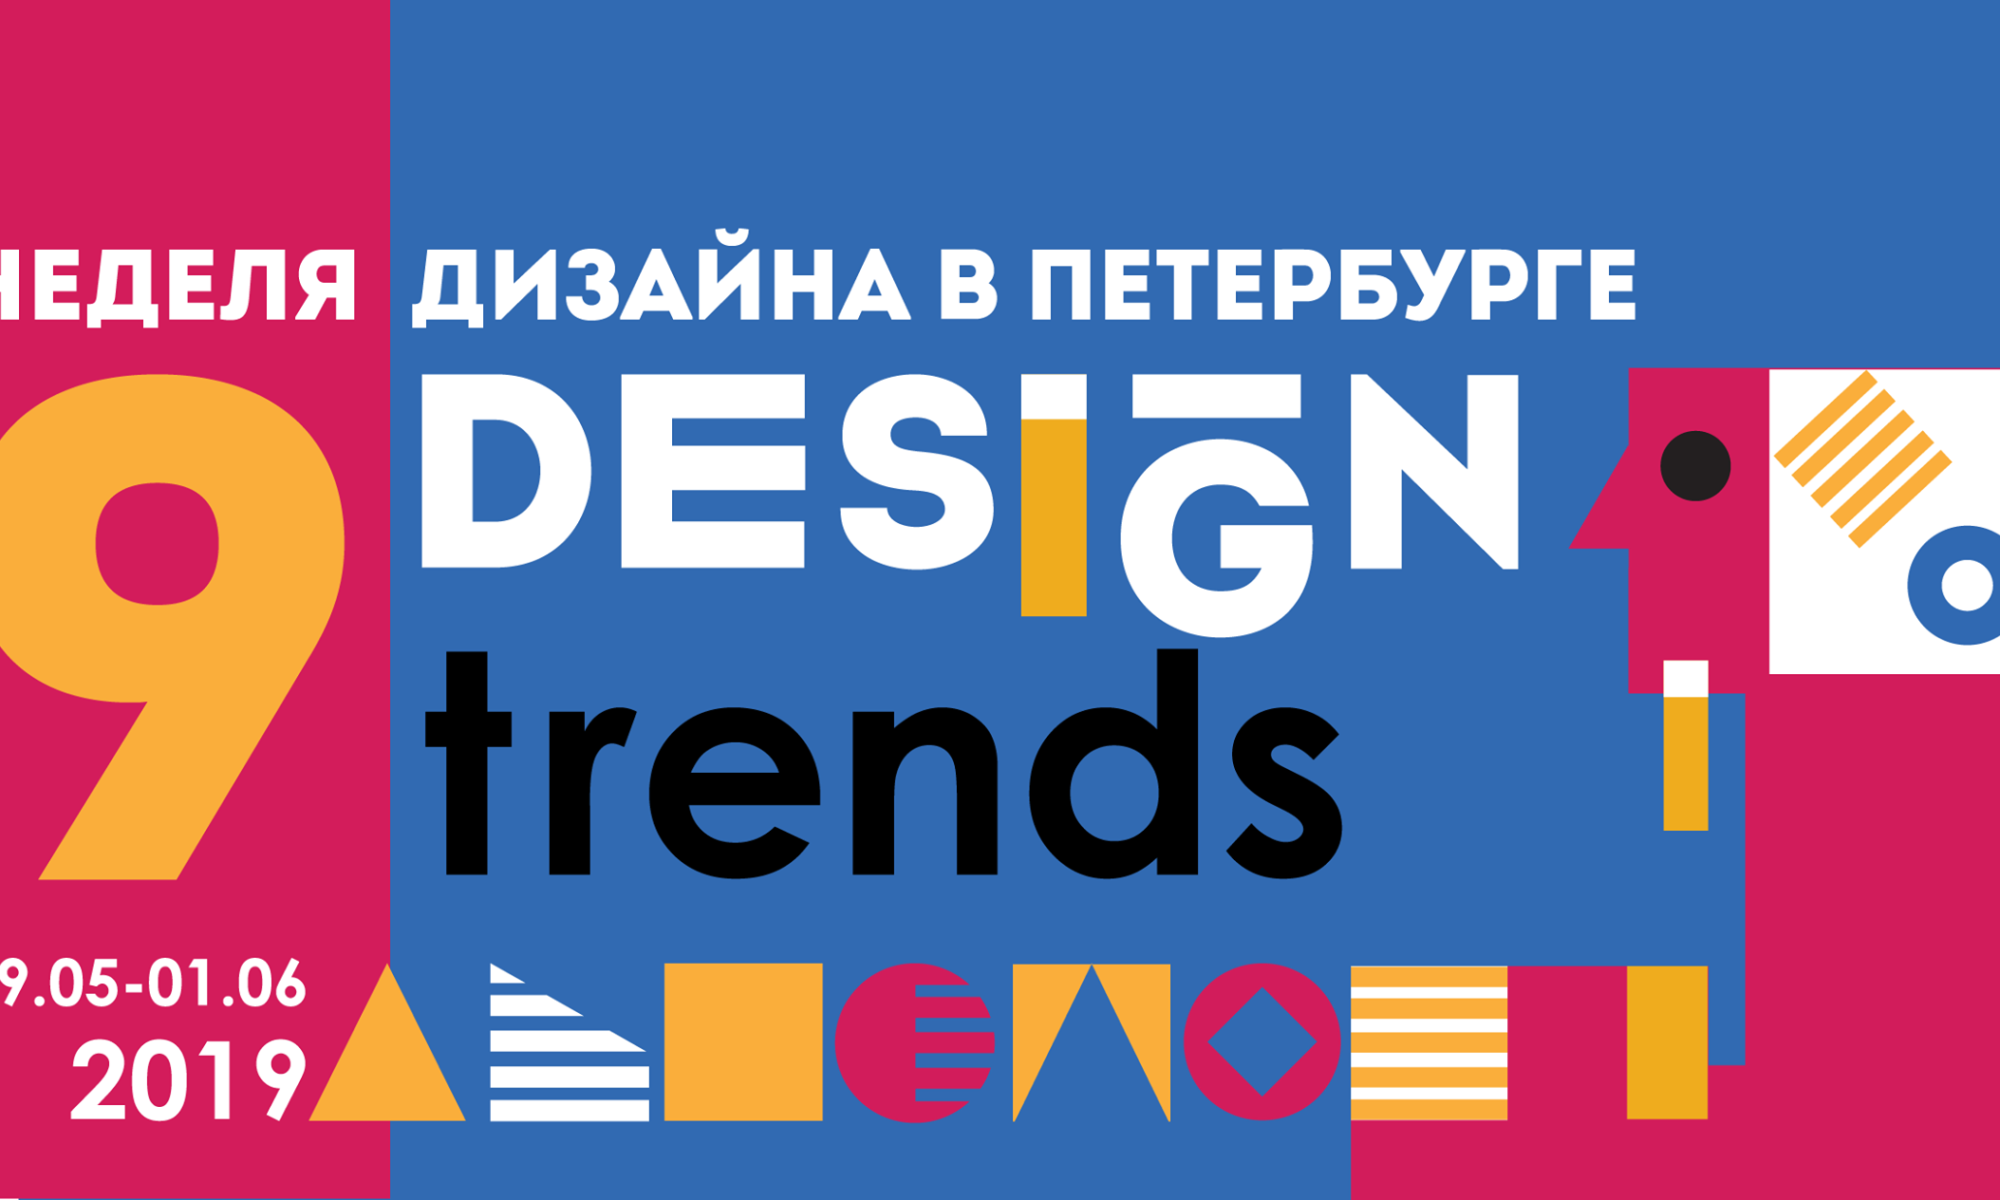 Магия девятки: 9 топовых трендов с IX недели дизайна в Санкт-Петербурге